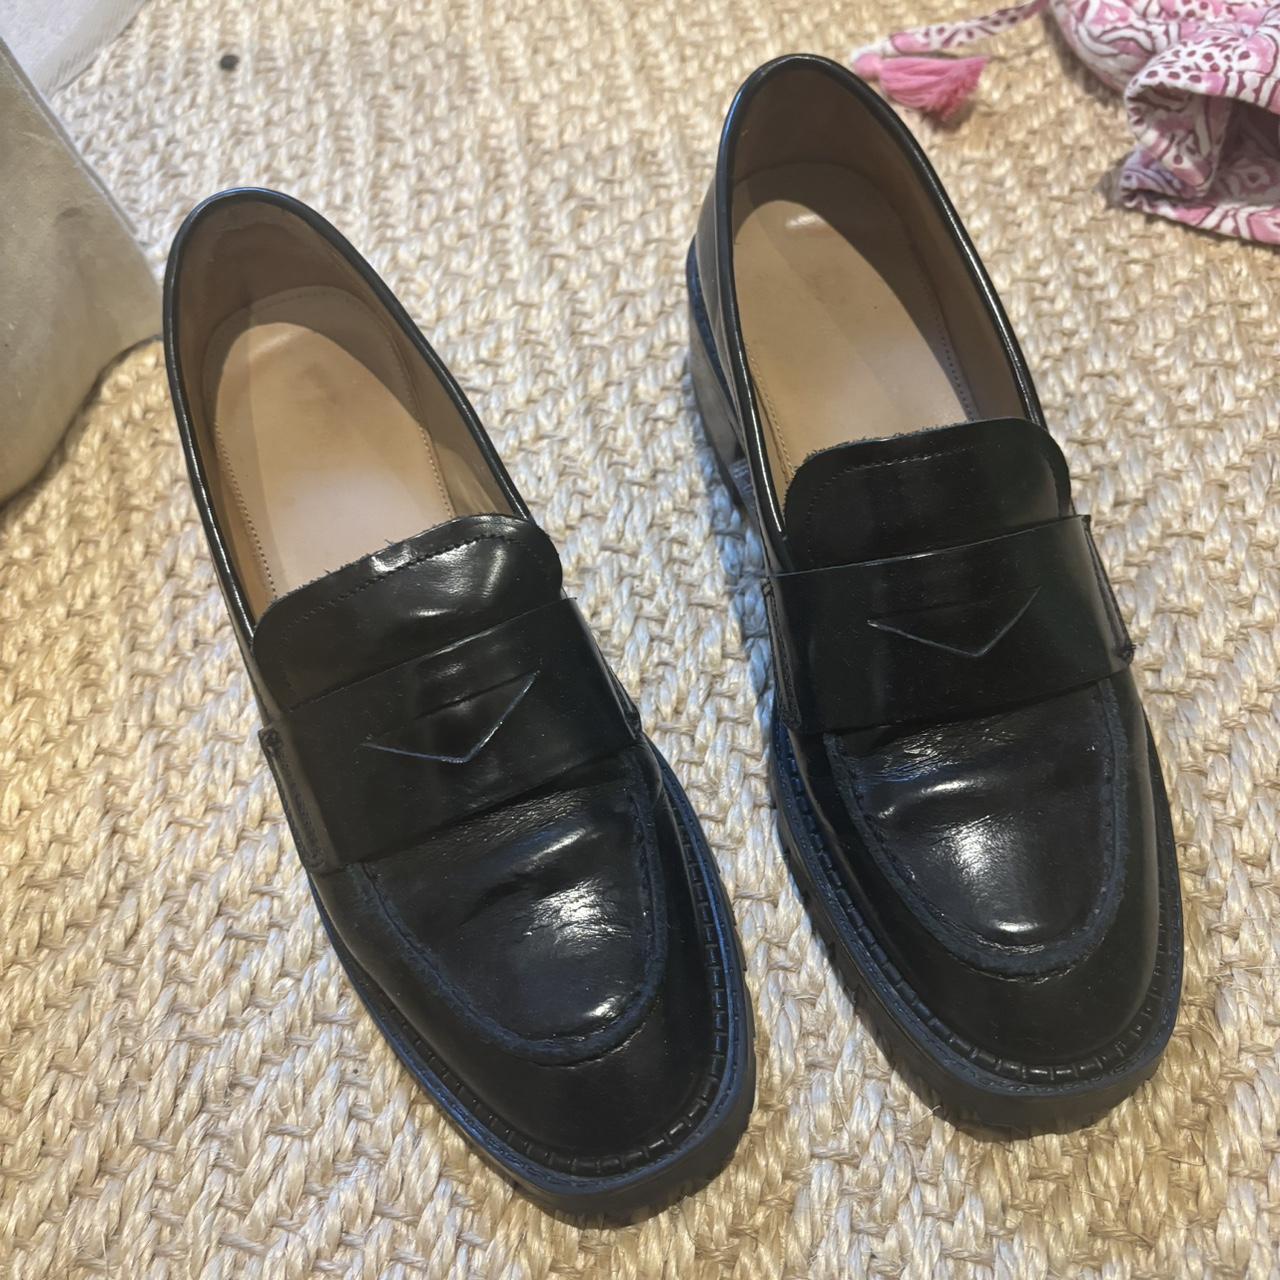 Black slightly heeled penny loafers Black loafers... - Depop